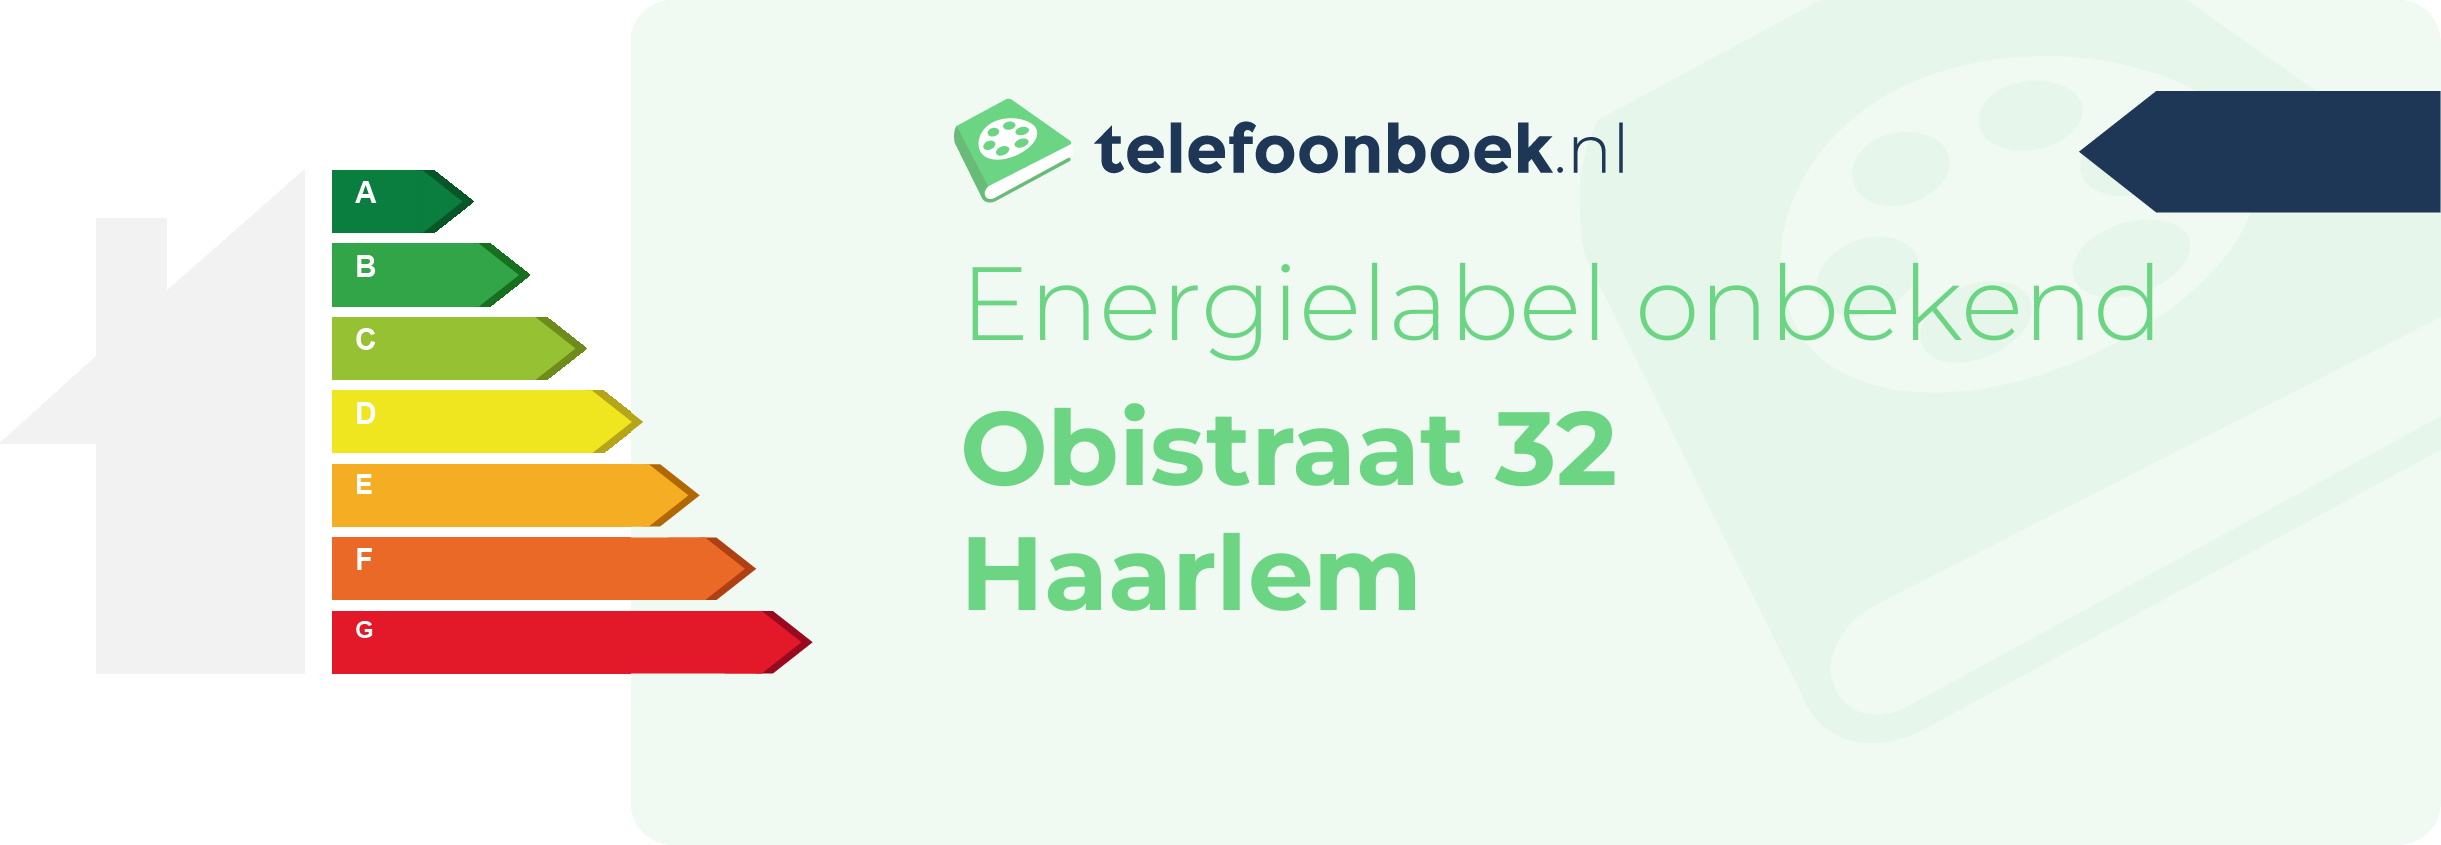 Energielabel Obistraat 32 Haarlem